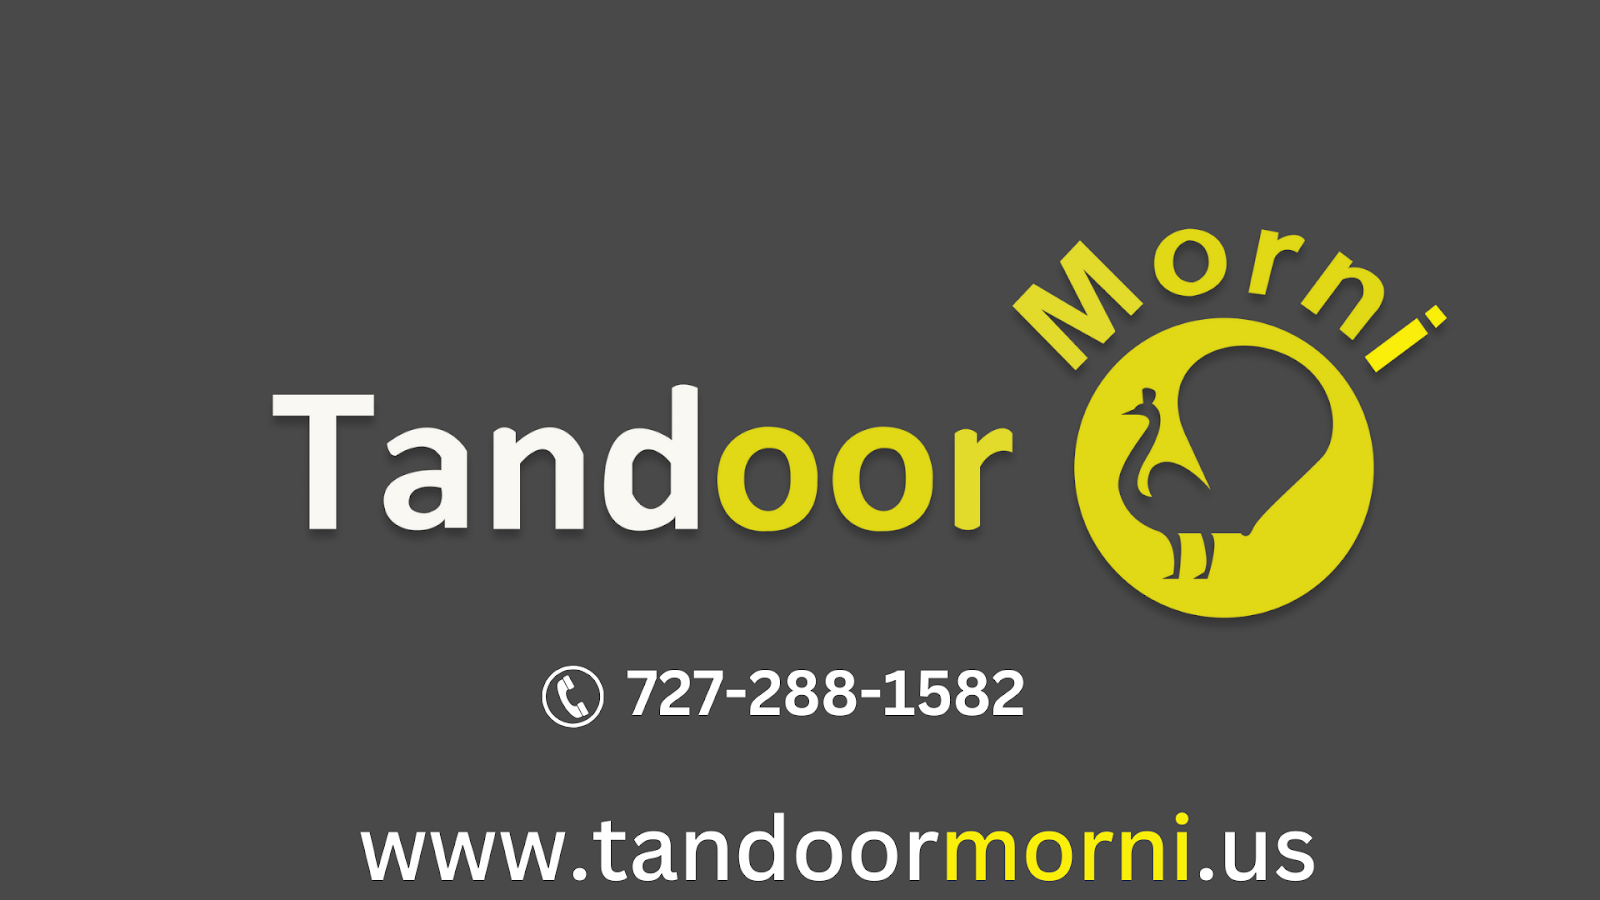 Order tandoor oven from Morni Tandoor today!